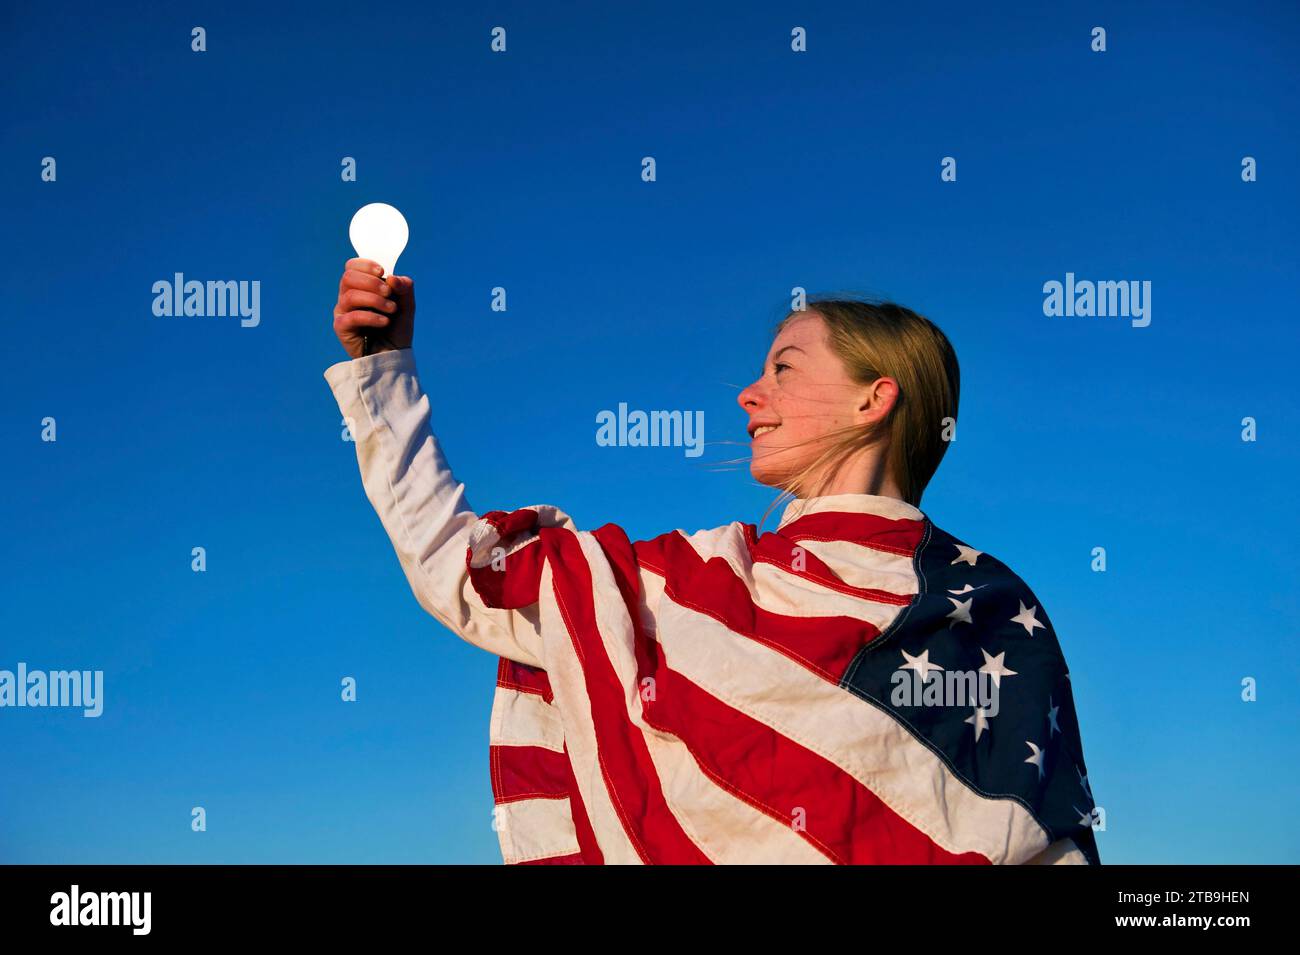 Die Glühbirne leuchtet in der Hand eines Mädchens, das in eine amerikanische Flagge gehüllt ist; Lincoln, Nebraska, Vereinigte Staaten von Amerika Stockfoto